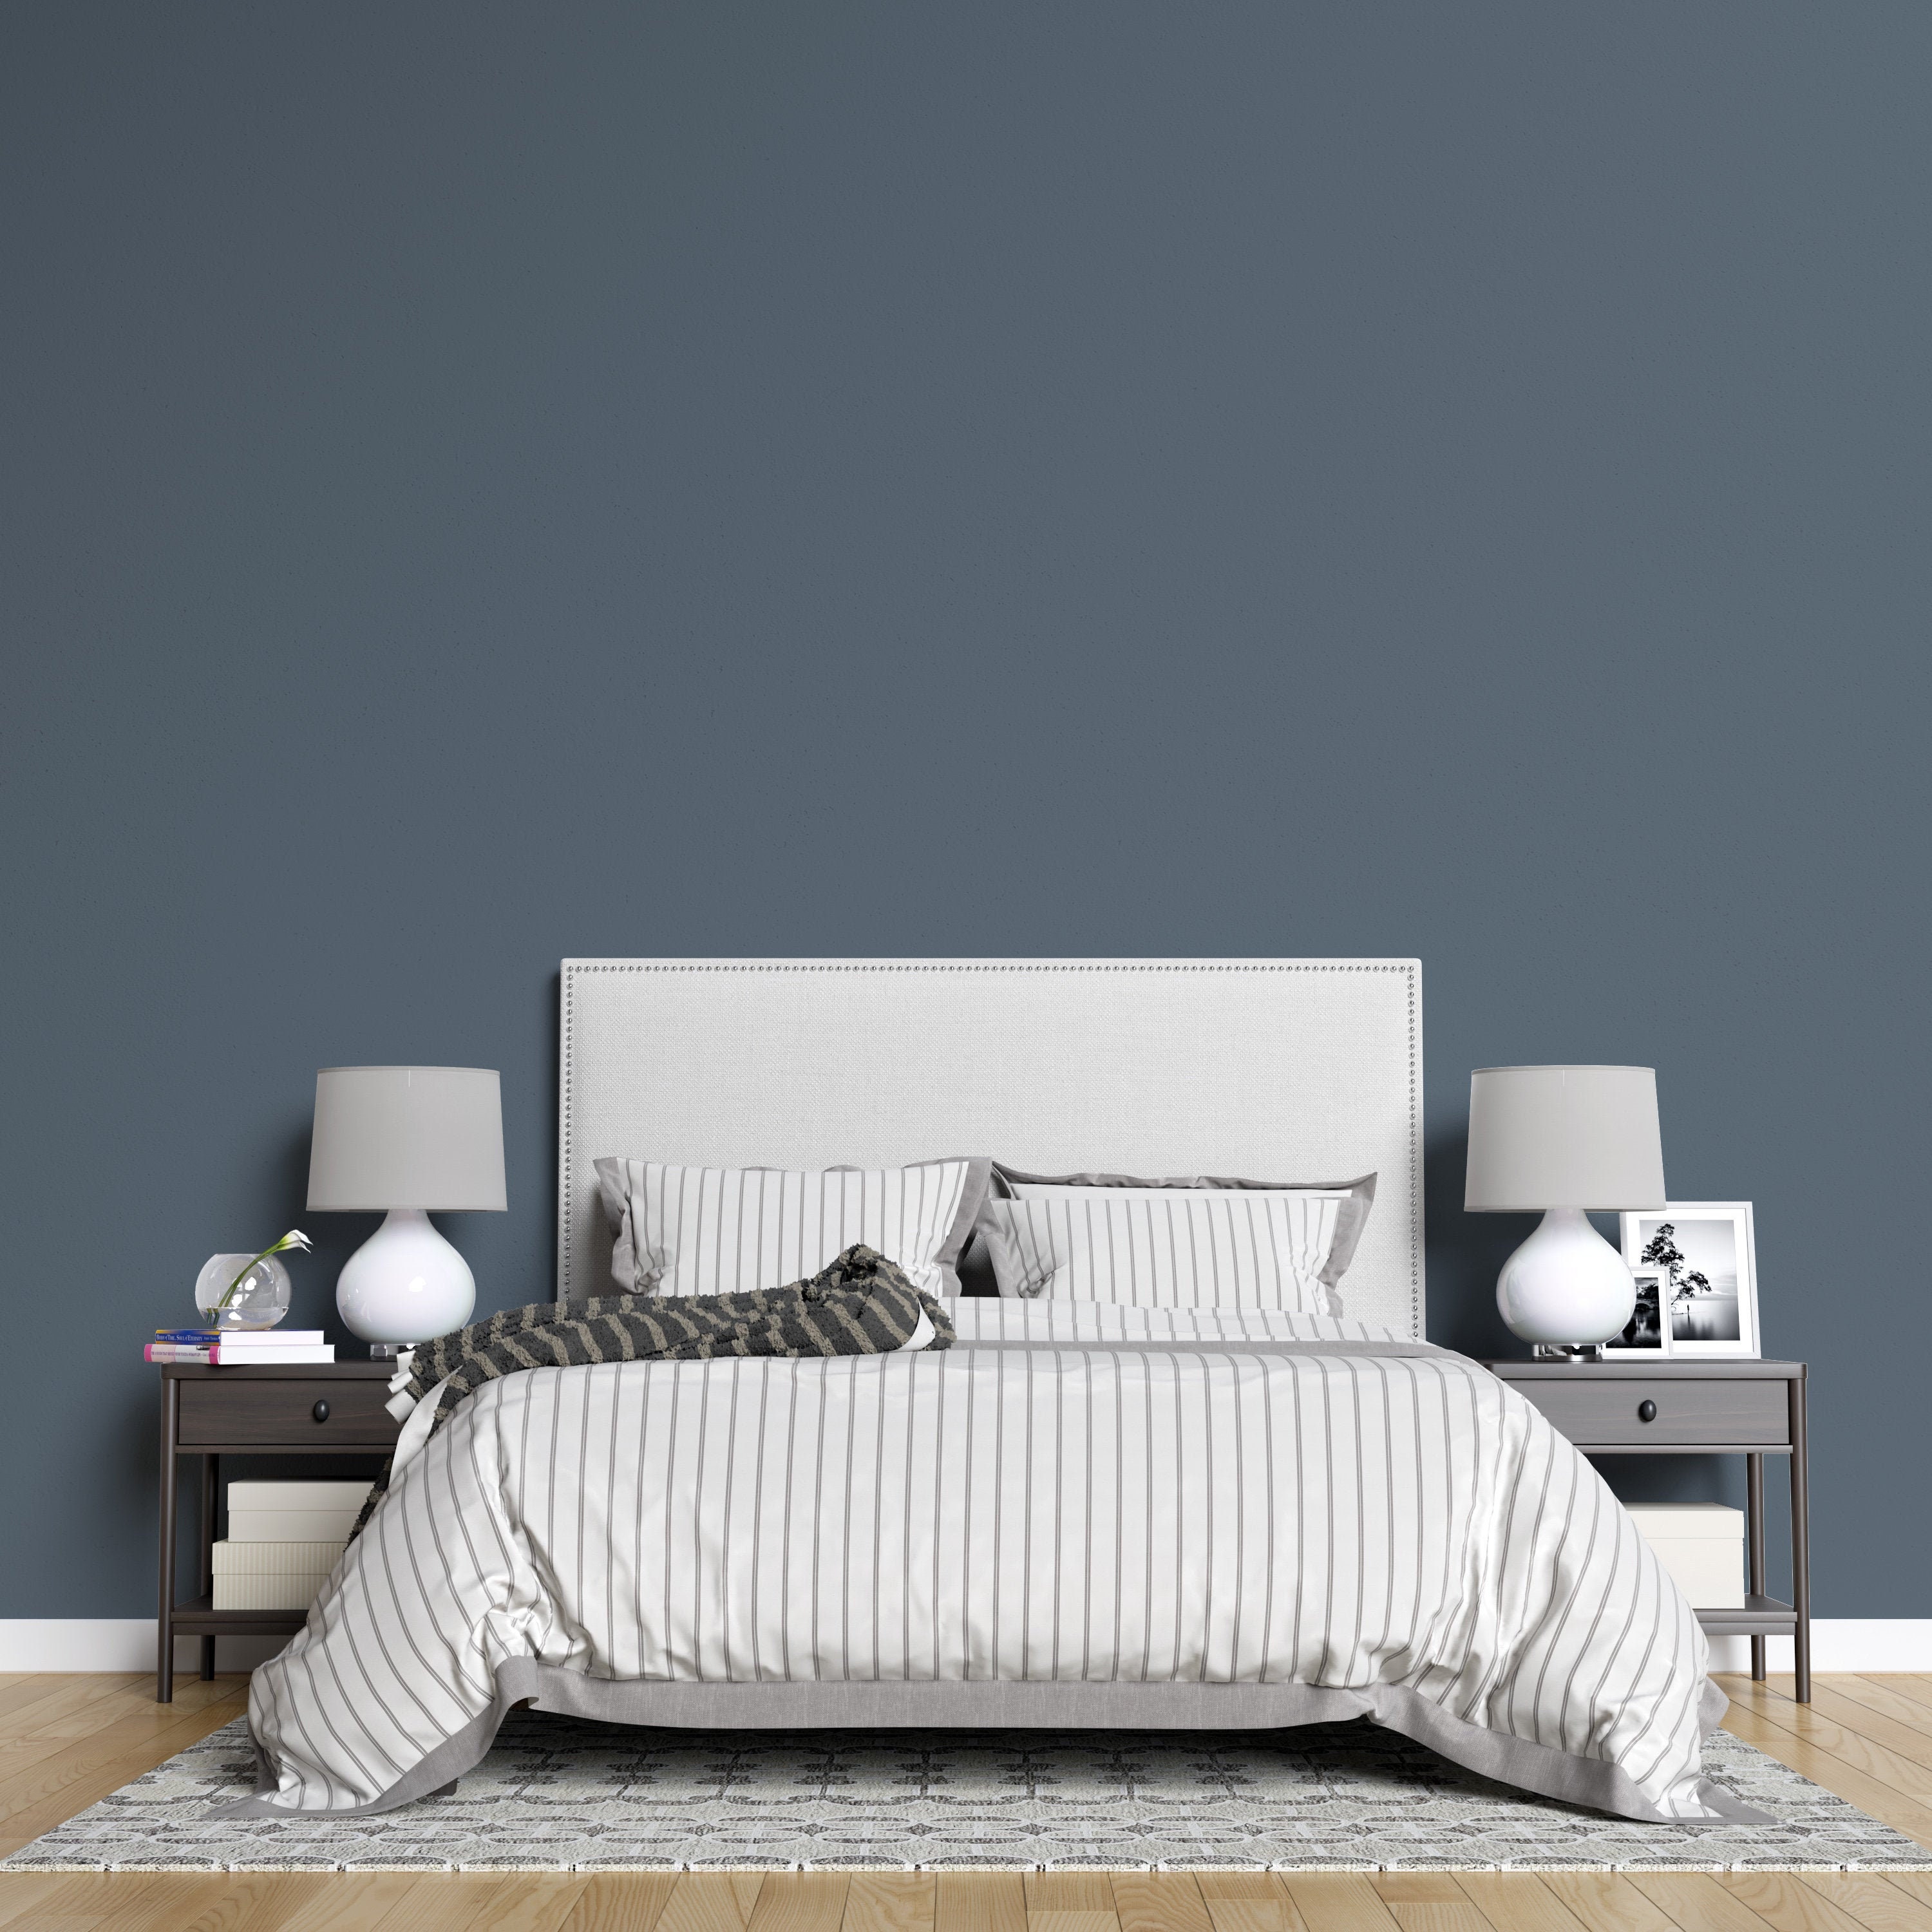 solid gray wallpaper light